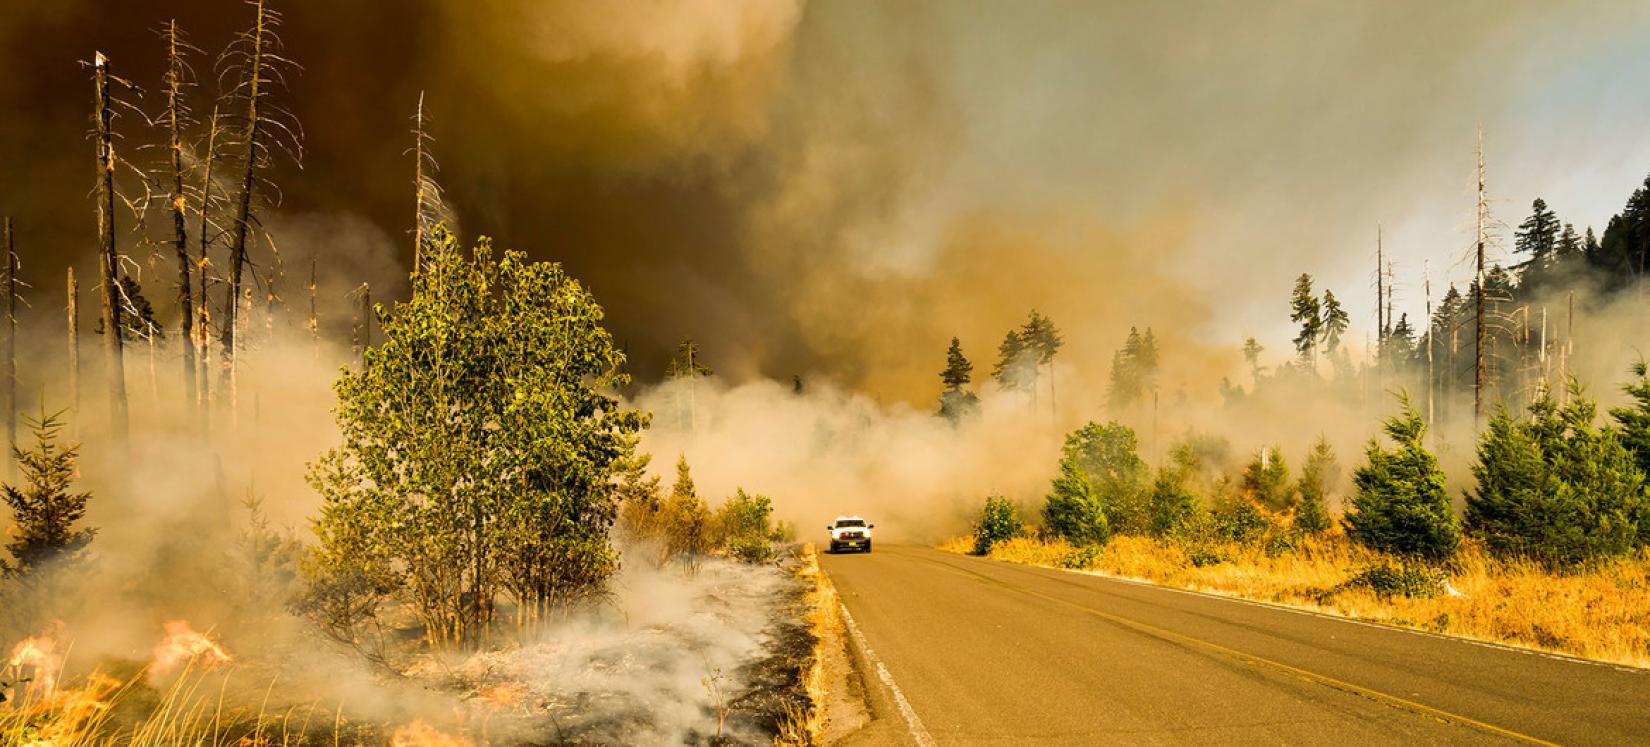 Лесной пожар в штате Орегон, США. 